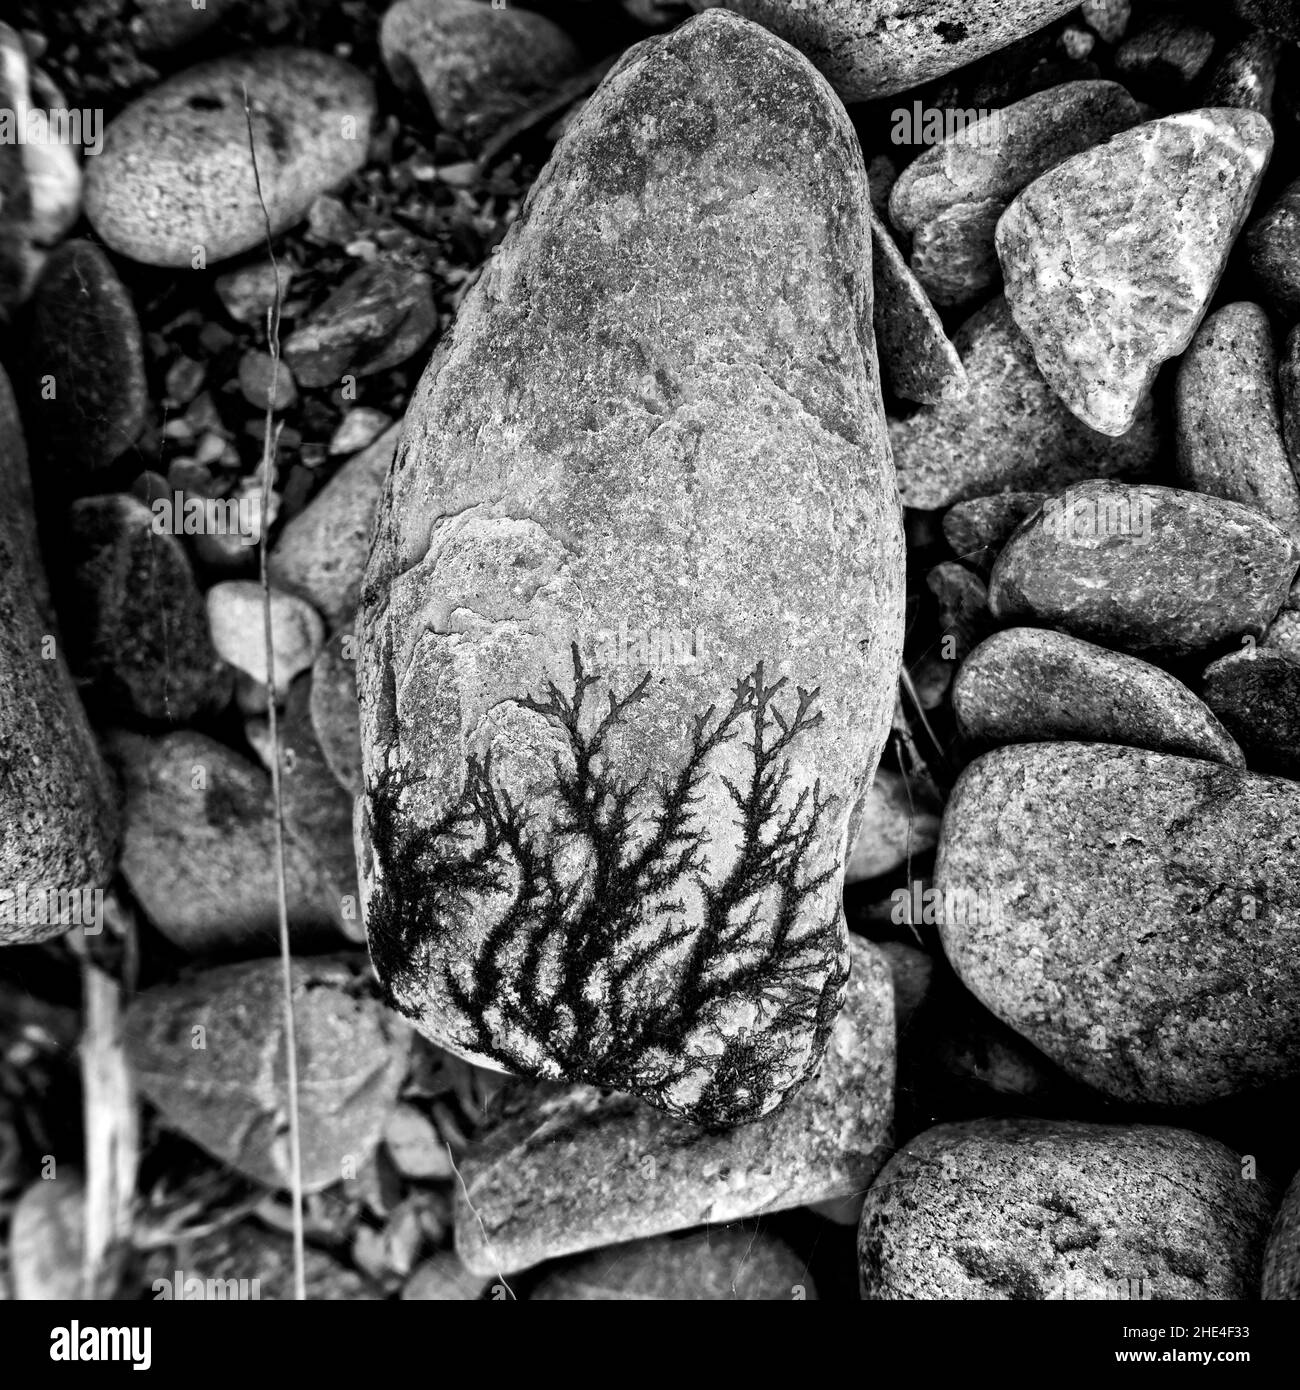 Opere d'arte naturali, realizzate da licheni su una roccia, che assomiglia a dendriti o bonsai. Foto Stock